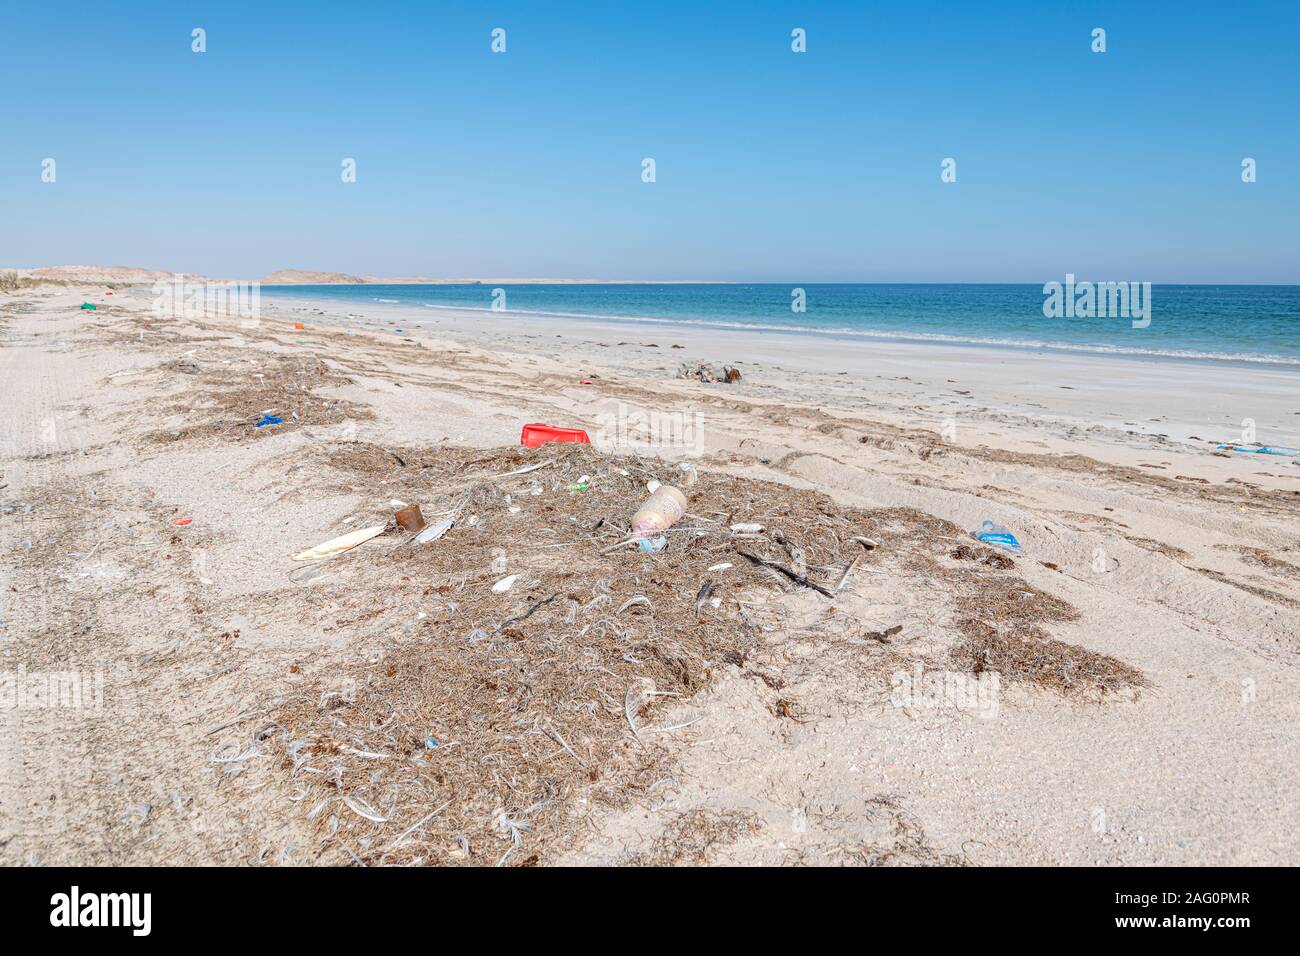 Basura y basura dejada en la playa por la gente y del mar. Contaminación plástica y problema ambiental Foto de stock